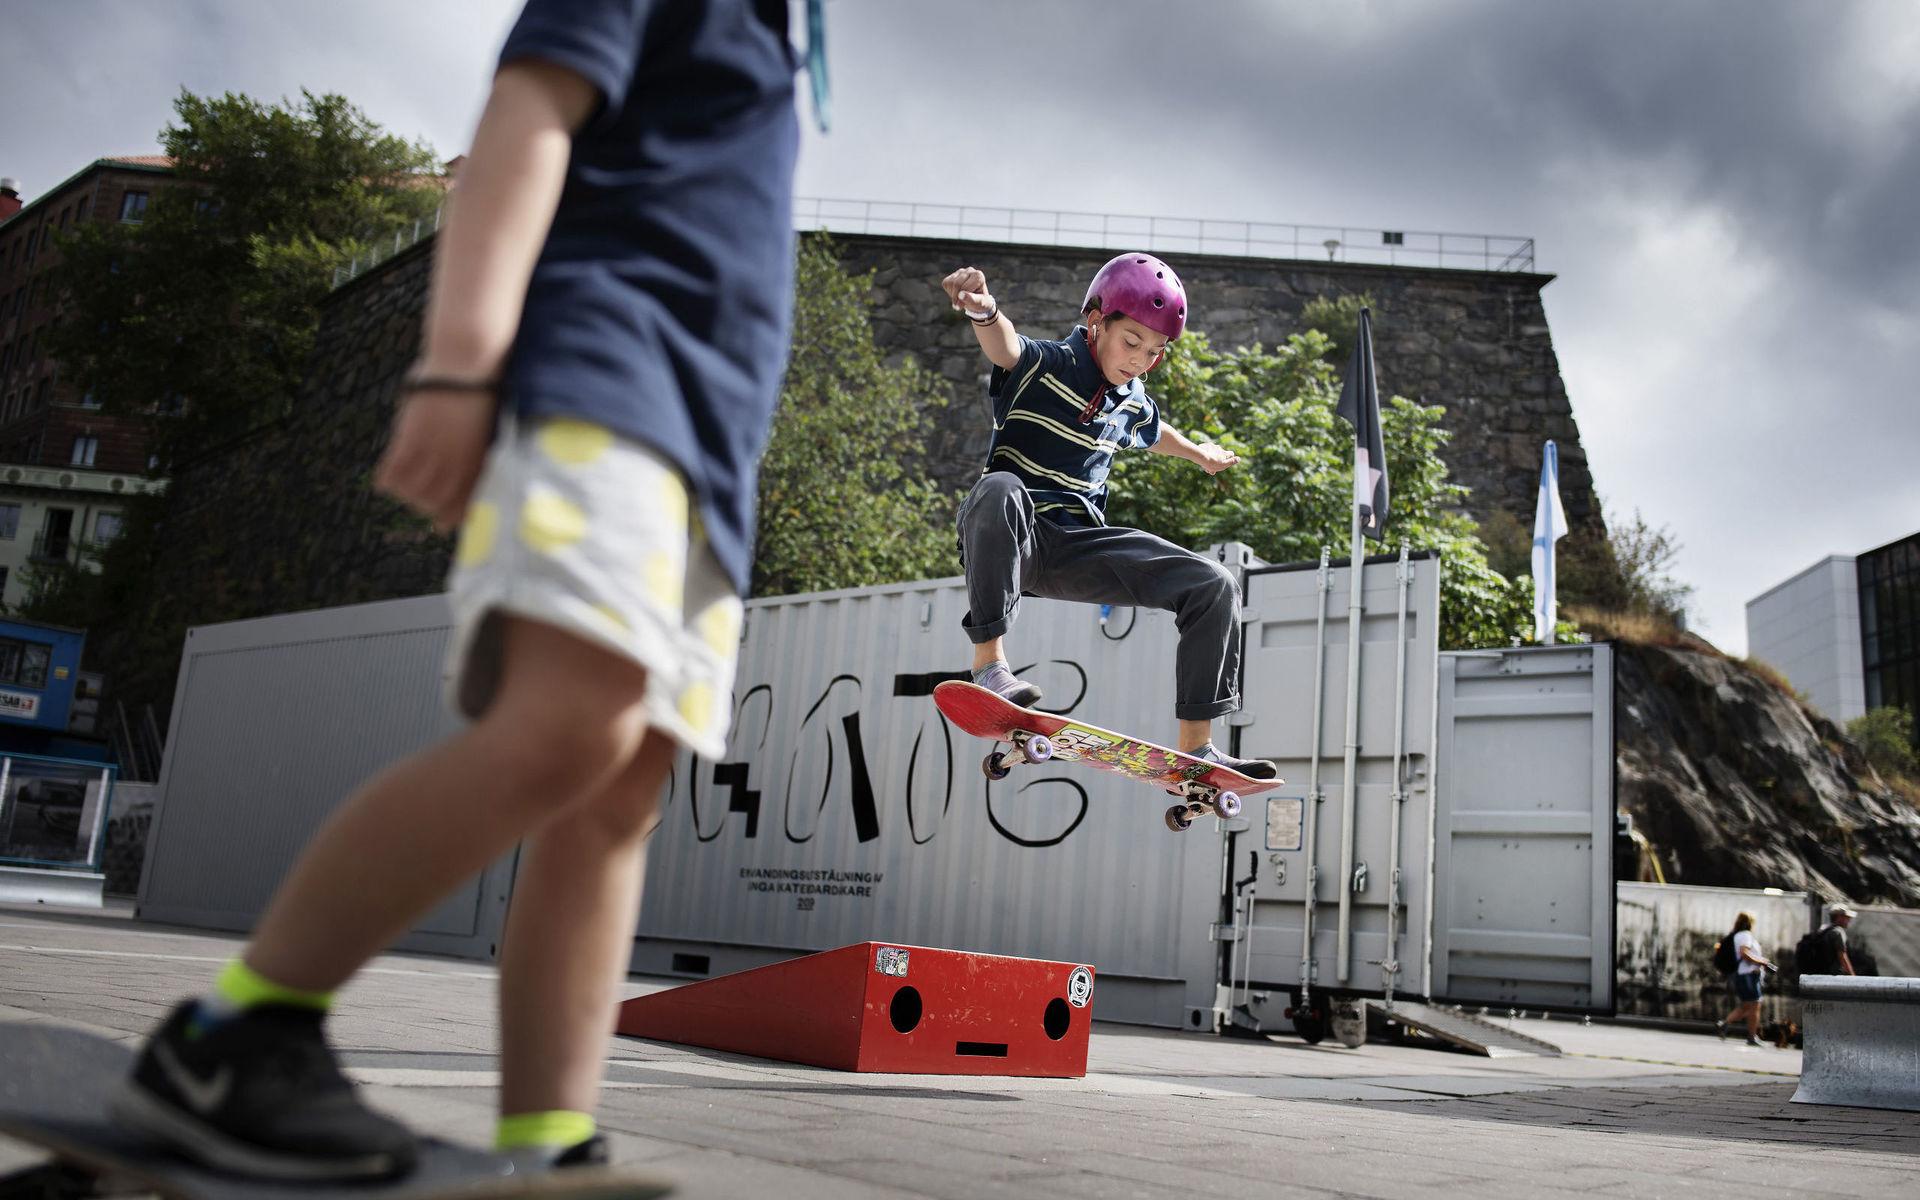 Jim Foufas, gör en frontside 180, Finn Baude, 5 år, i förgrunden. Skateutställning på Esperantoplatsen i Göteborg av Robin Aron.